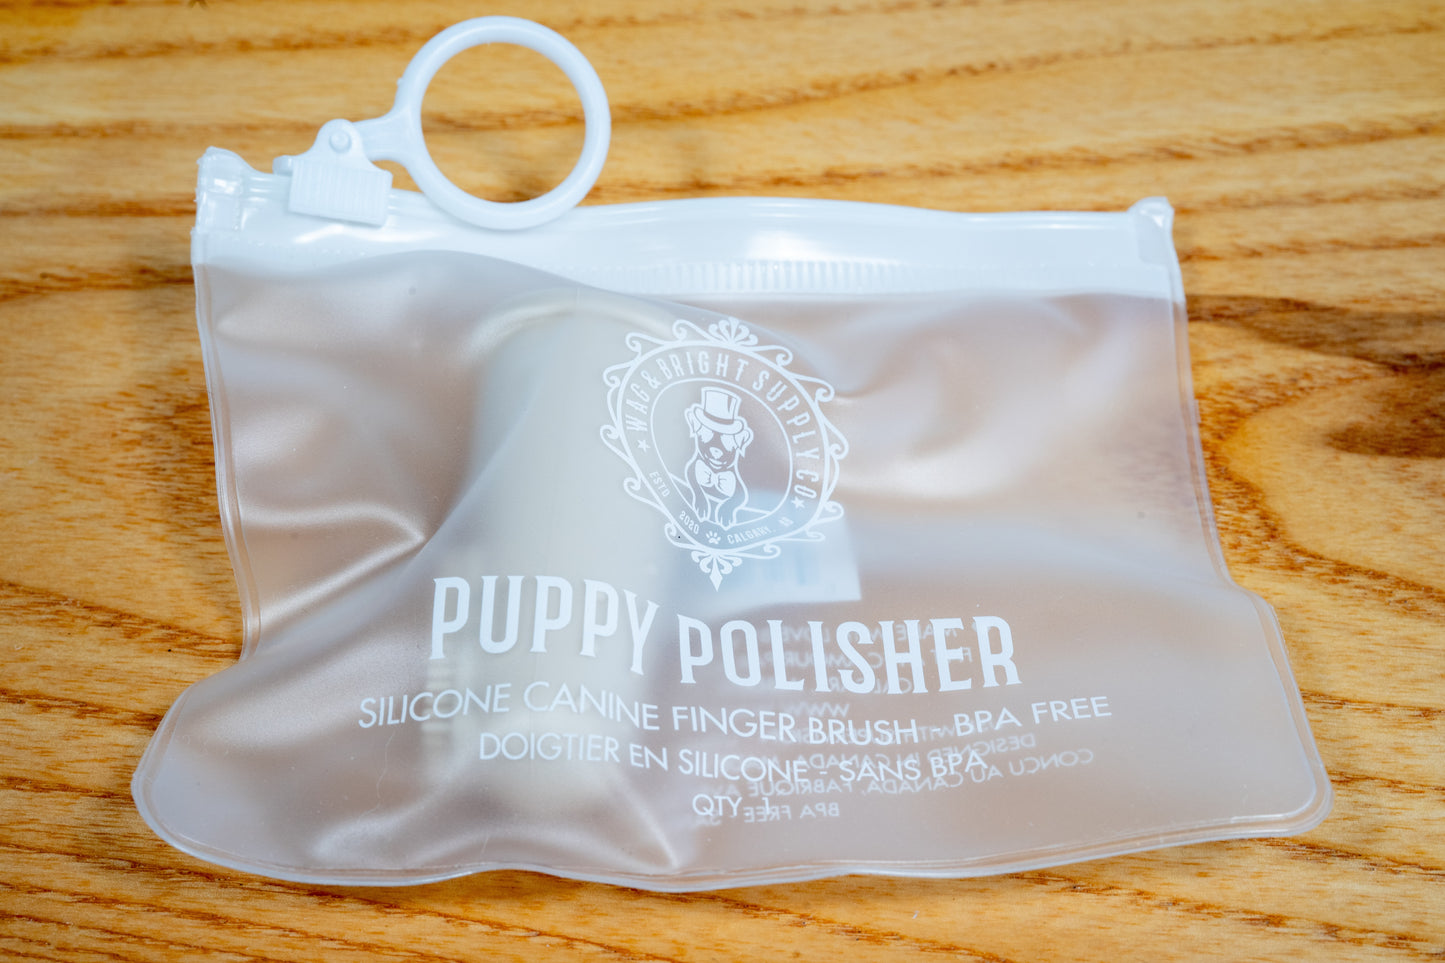 Doigtier en silicone pour soin buccale canin dans son sac de voyage..